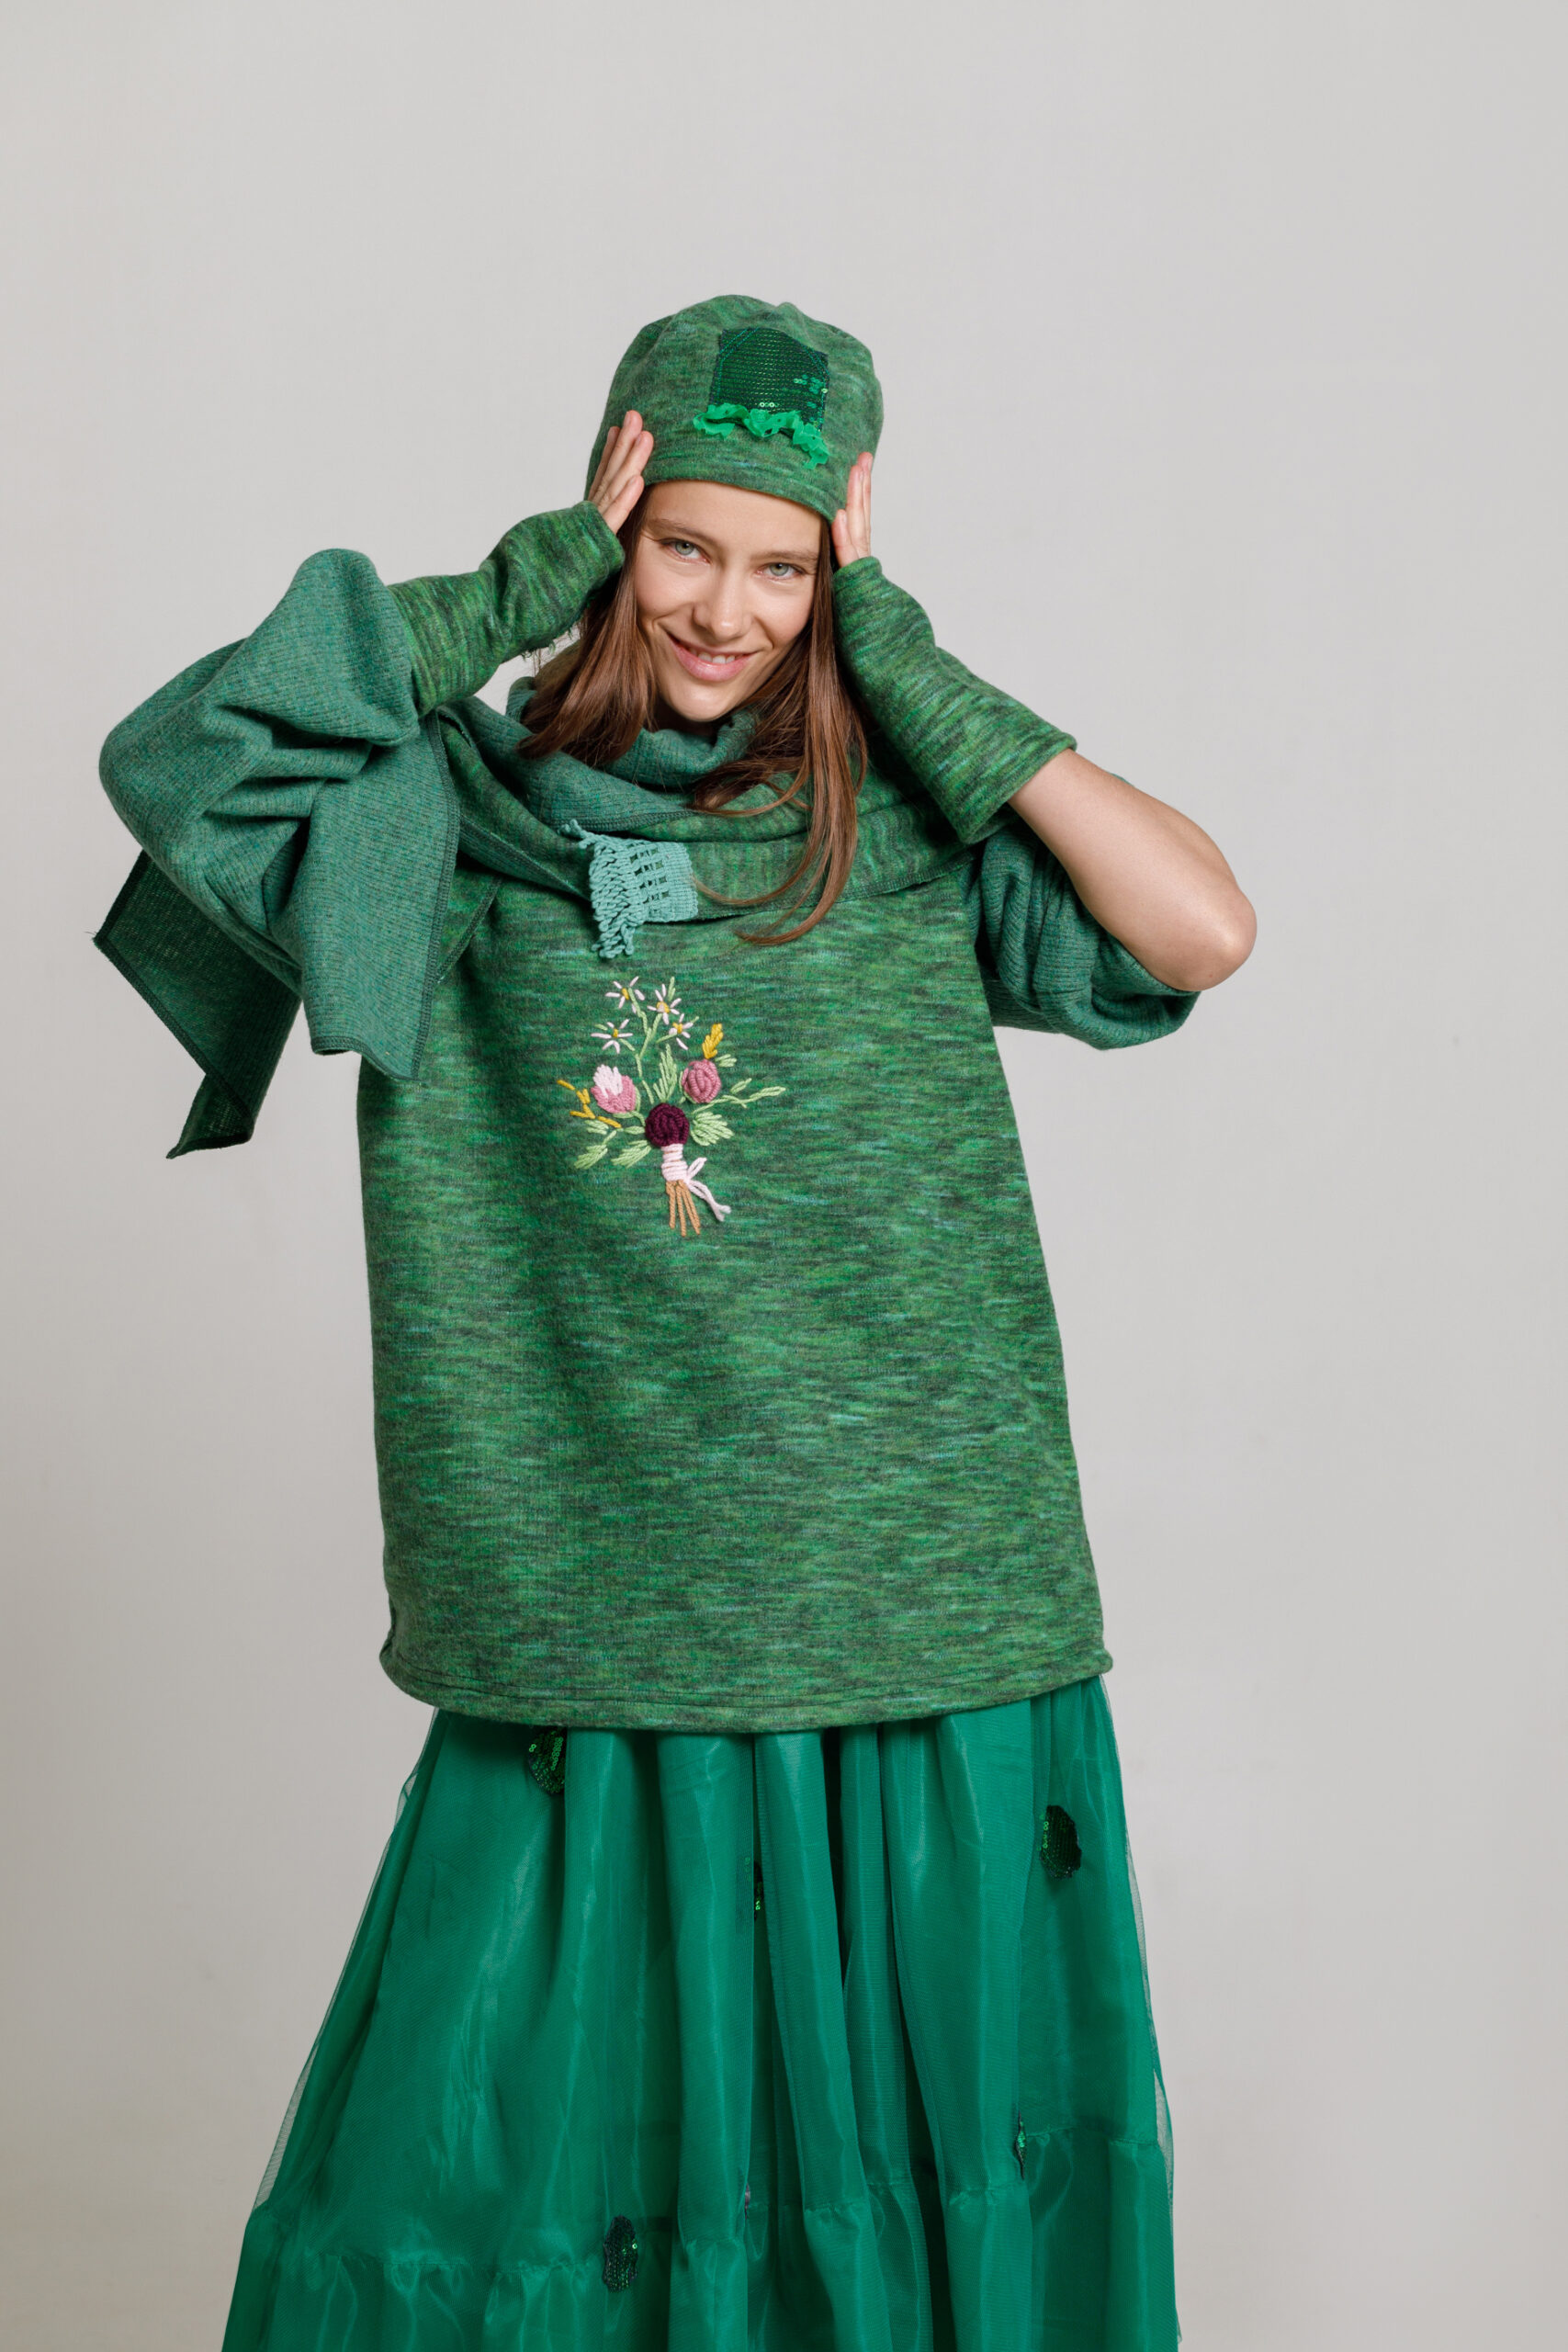 Căciulă din tricot verde. Materiale naturale, design unicat, cu broderie si aplicatii handmade